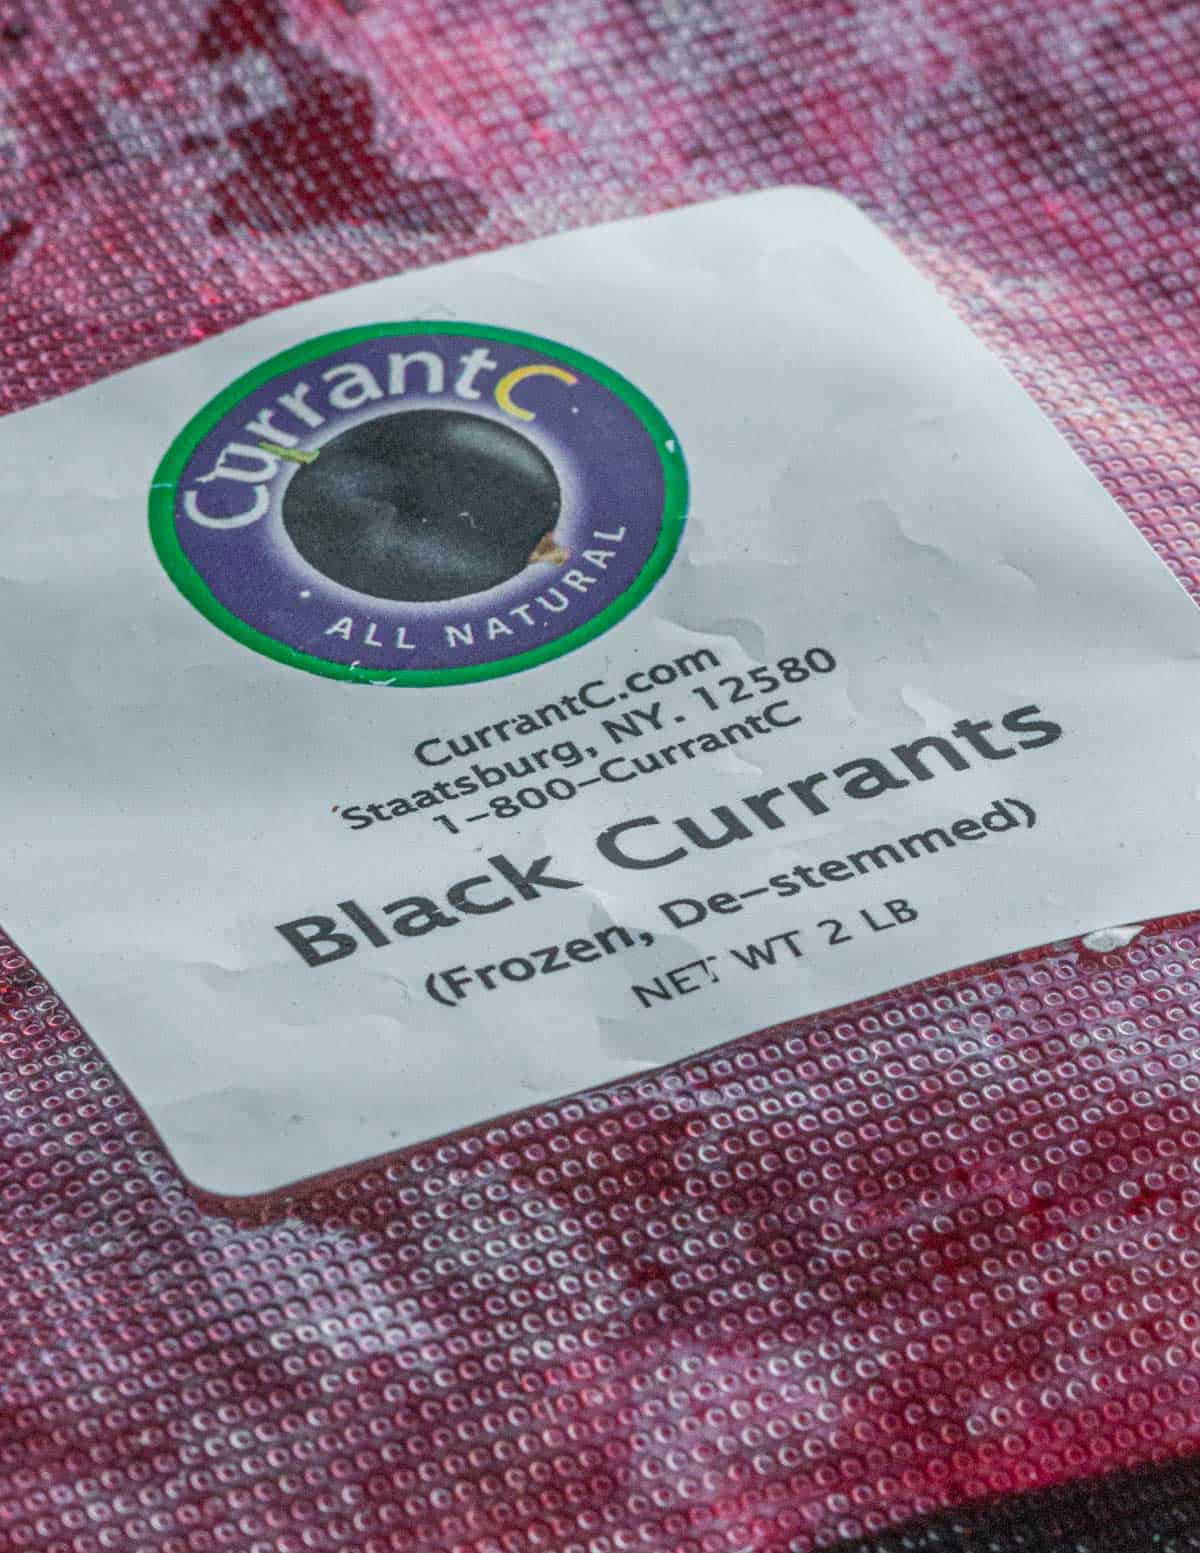 A bag of frozen black currants. 